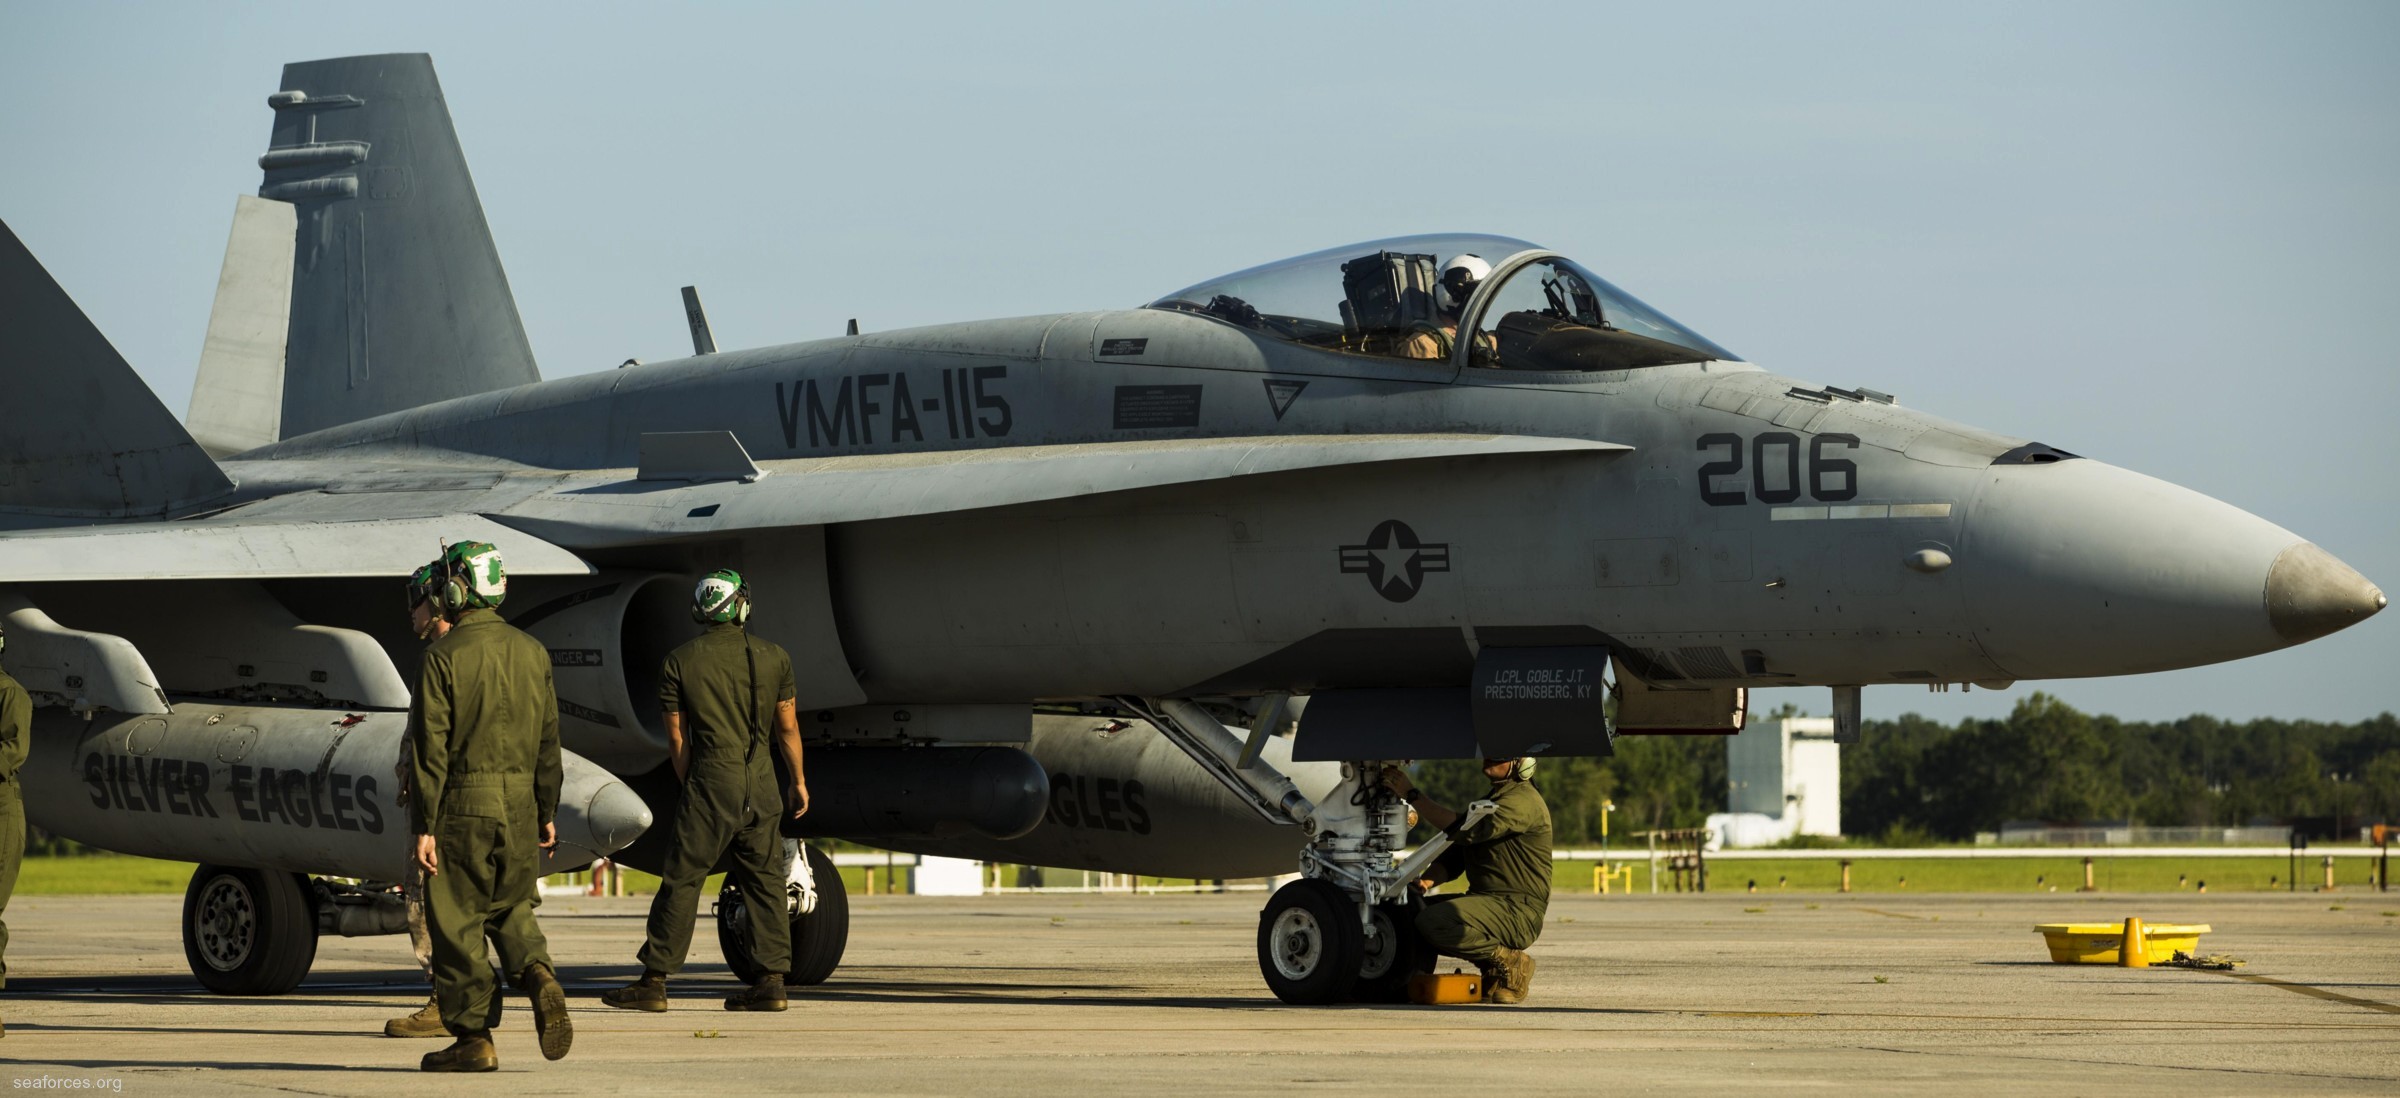 vmfa-115 silver eagles marine fighter attack squadron f/a-18a+ hornet 69